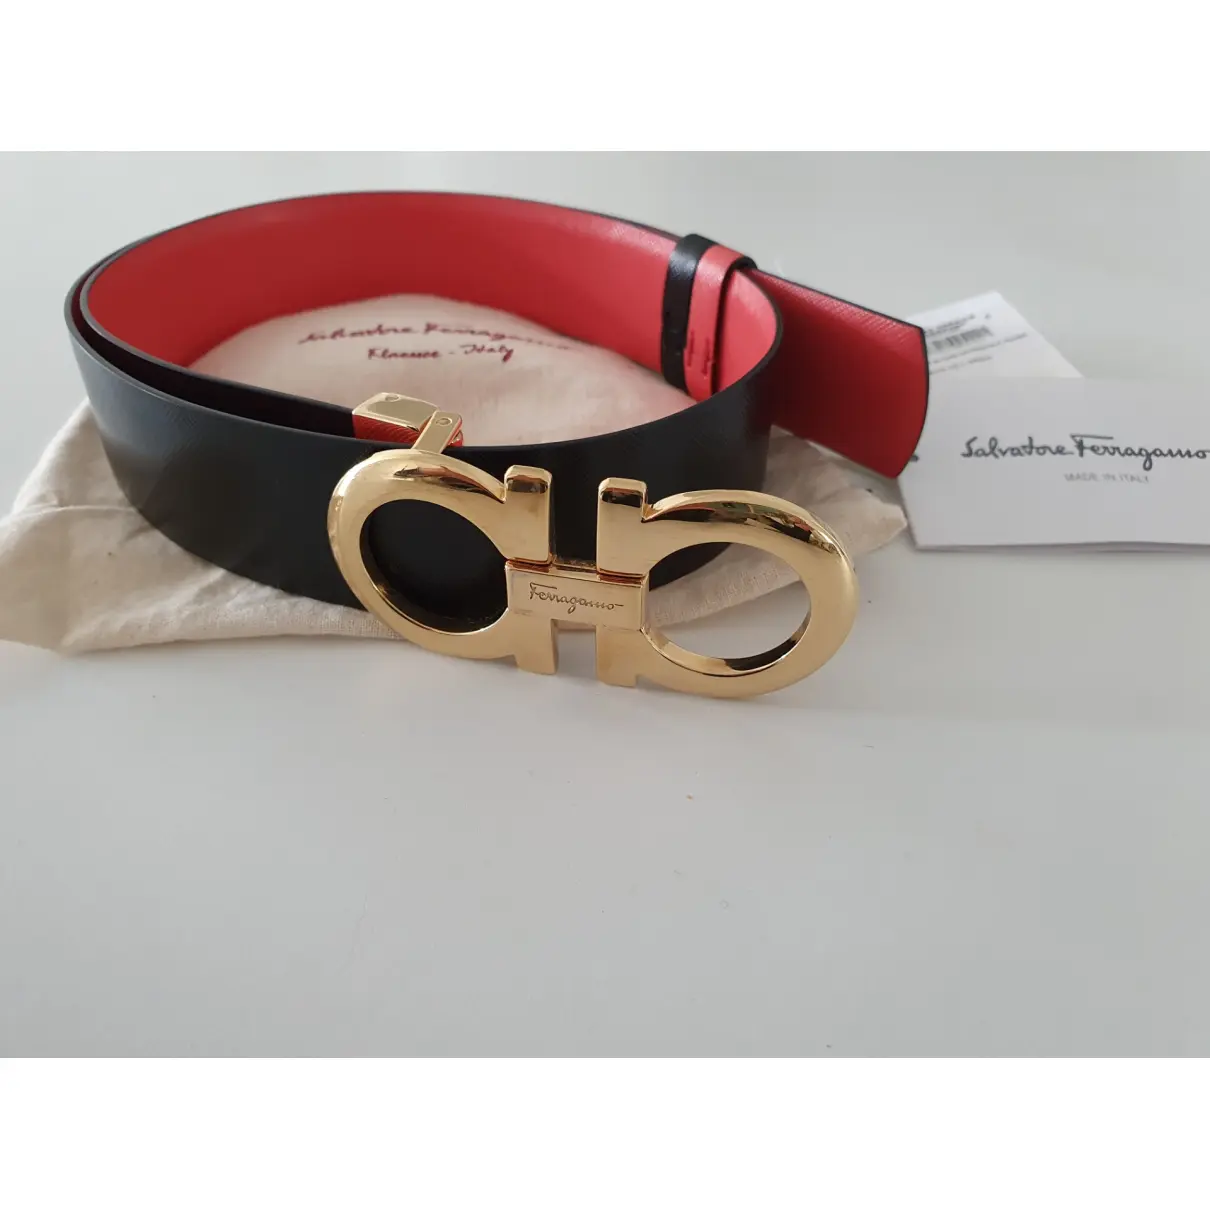 Buy Salvatore Ferragamo Leather belt online